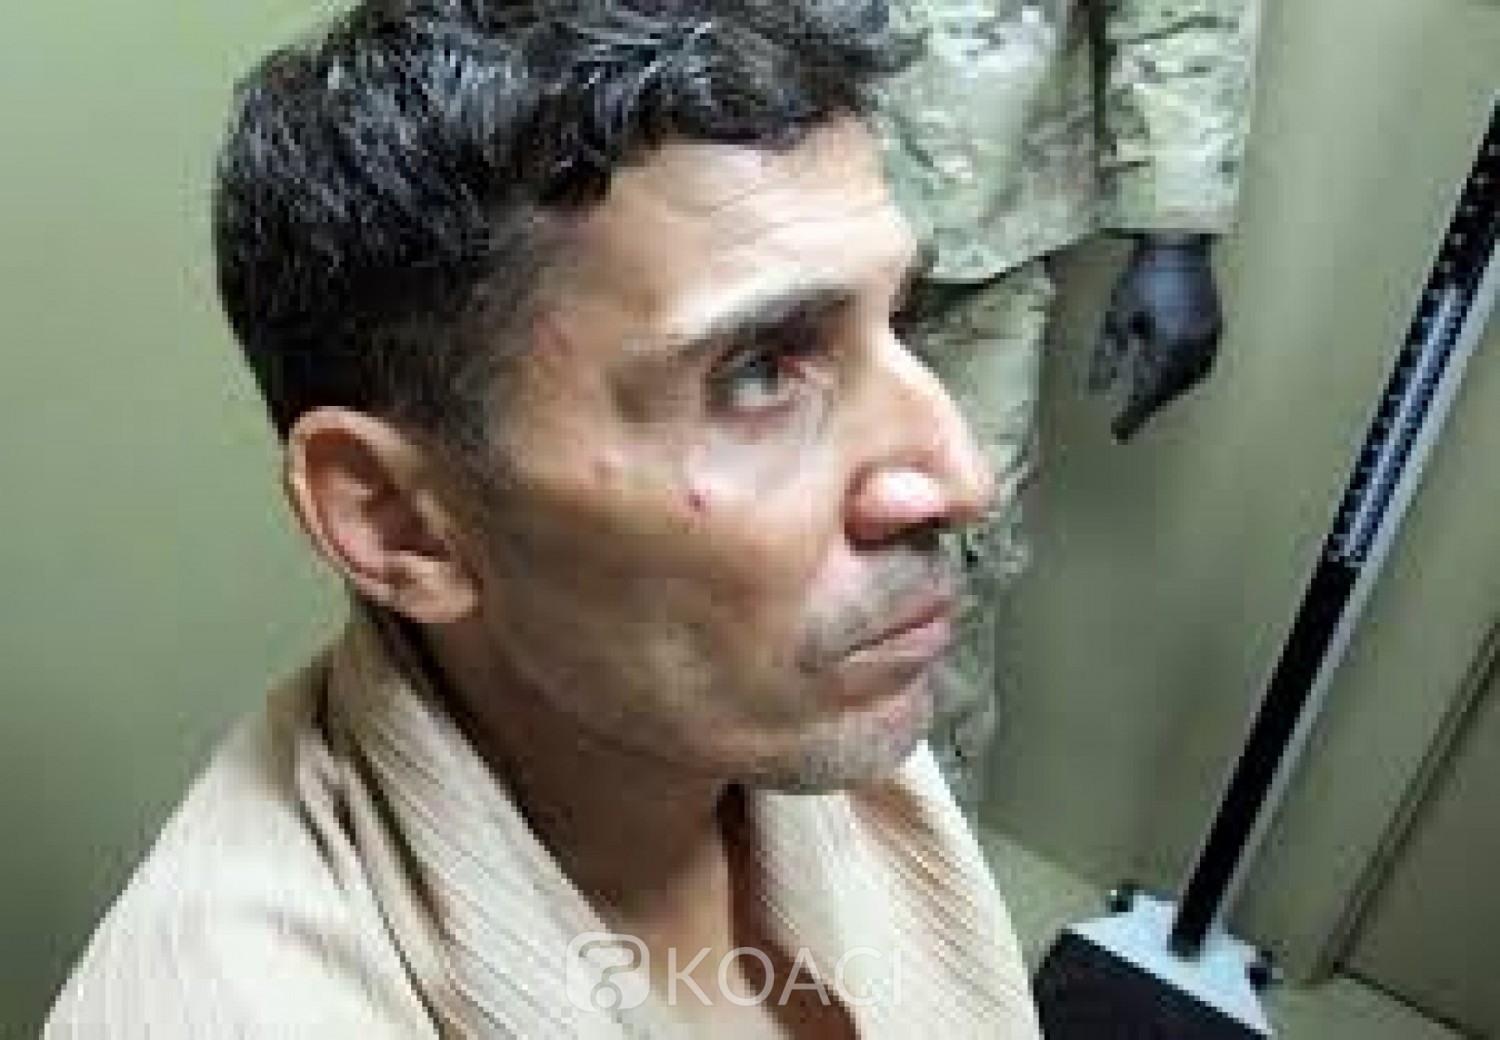 Libye: Attentat contre le consulat américain, un libyen condamné à 19 ans de prison aux USA